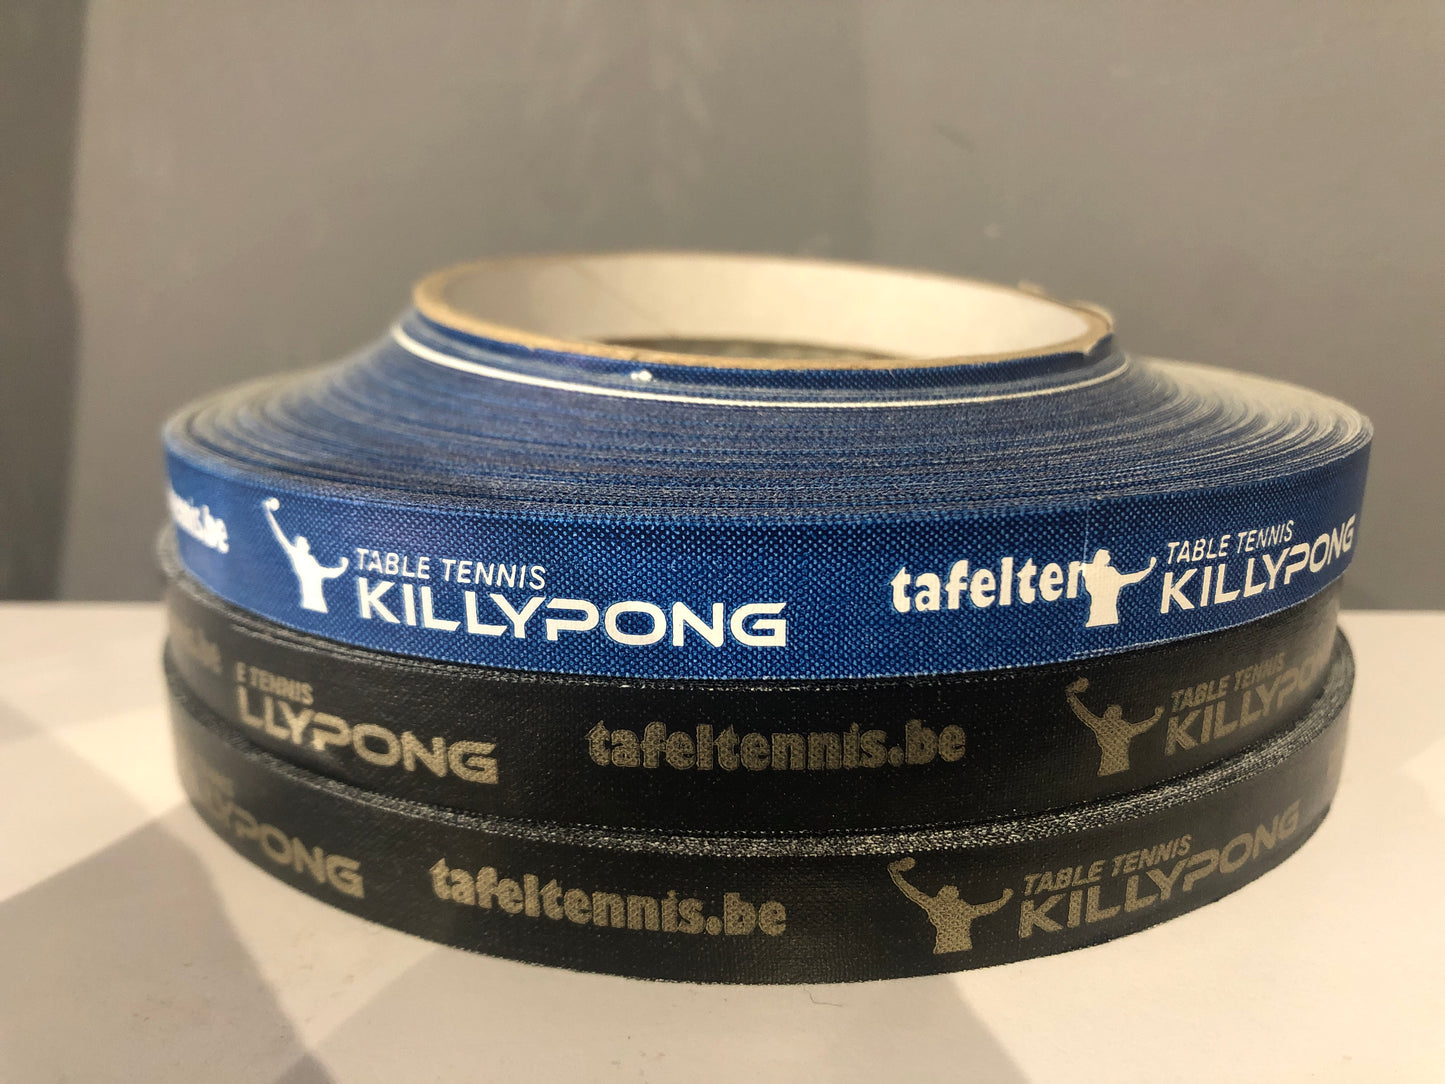 Killypong Kantenband - Killypong